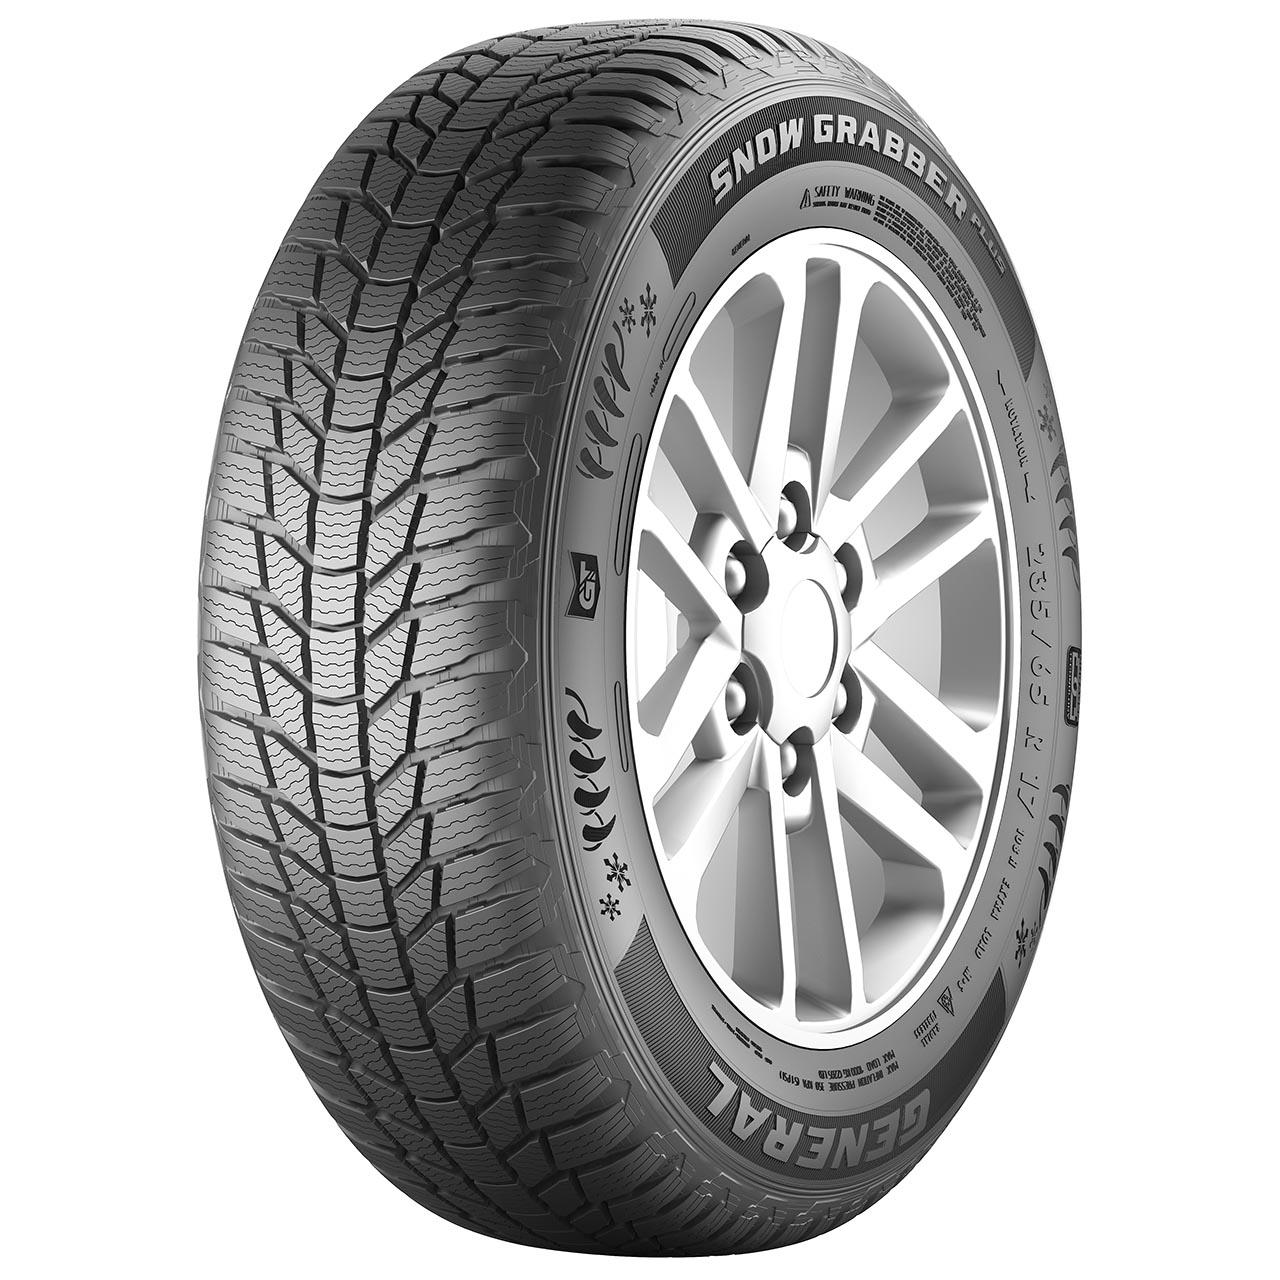 General Tire Snow Grabber Plus 235/70R16 106T FR